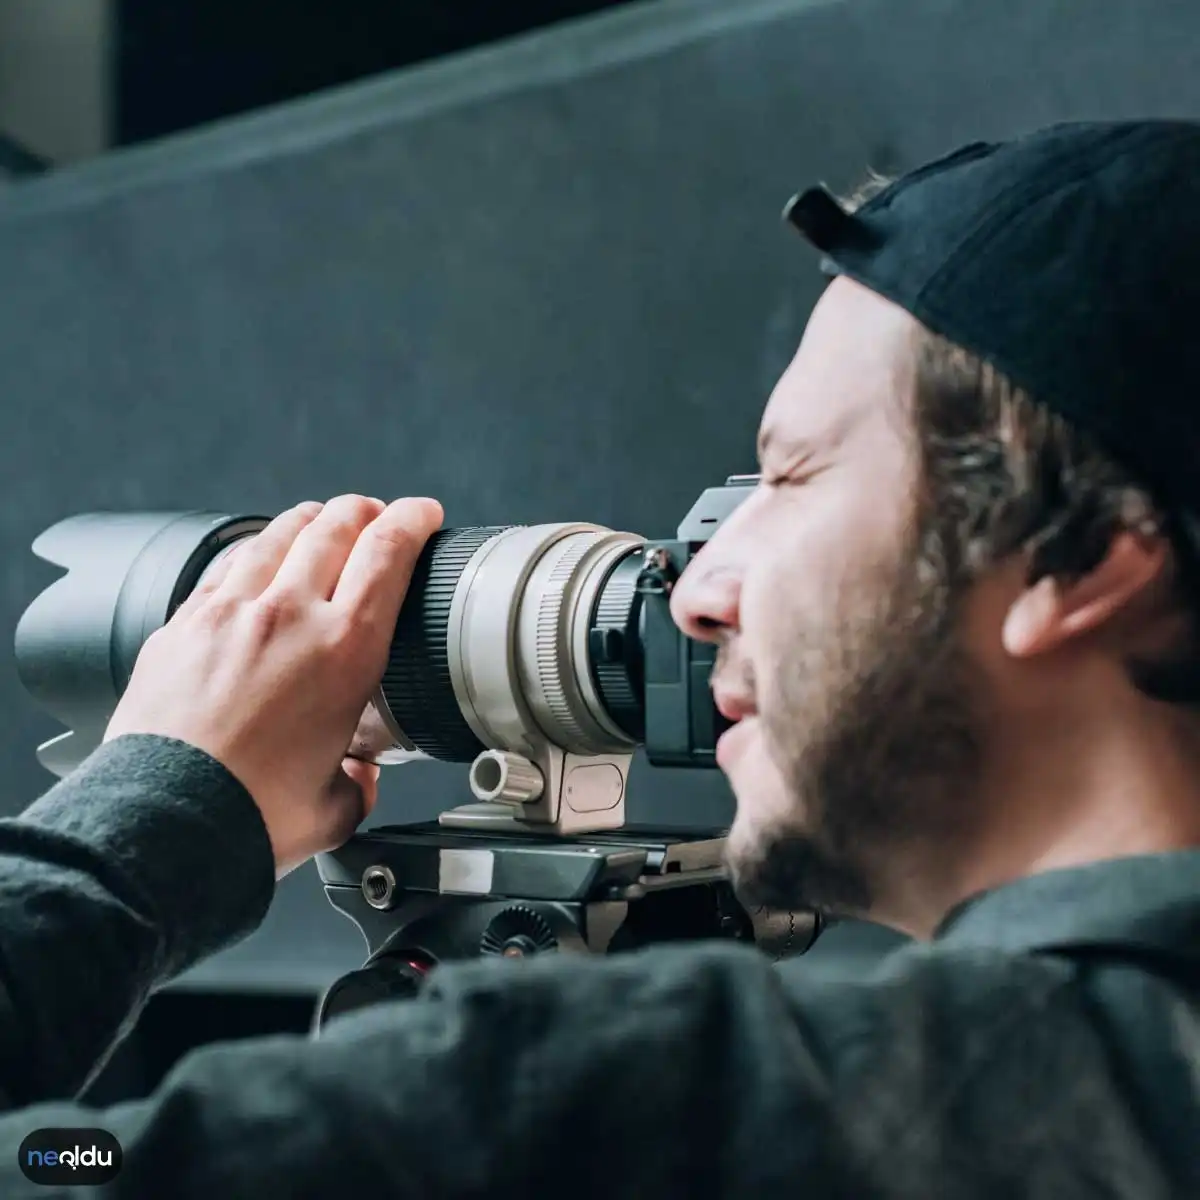 İyi Bir Kameramanda Aranan Kriterler Neler?